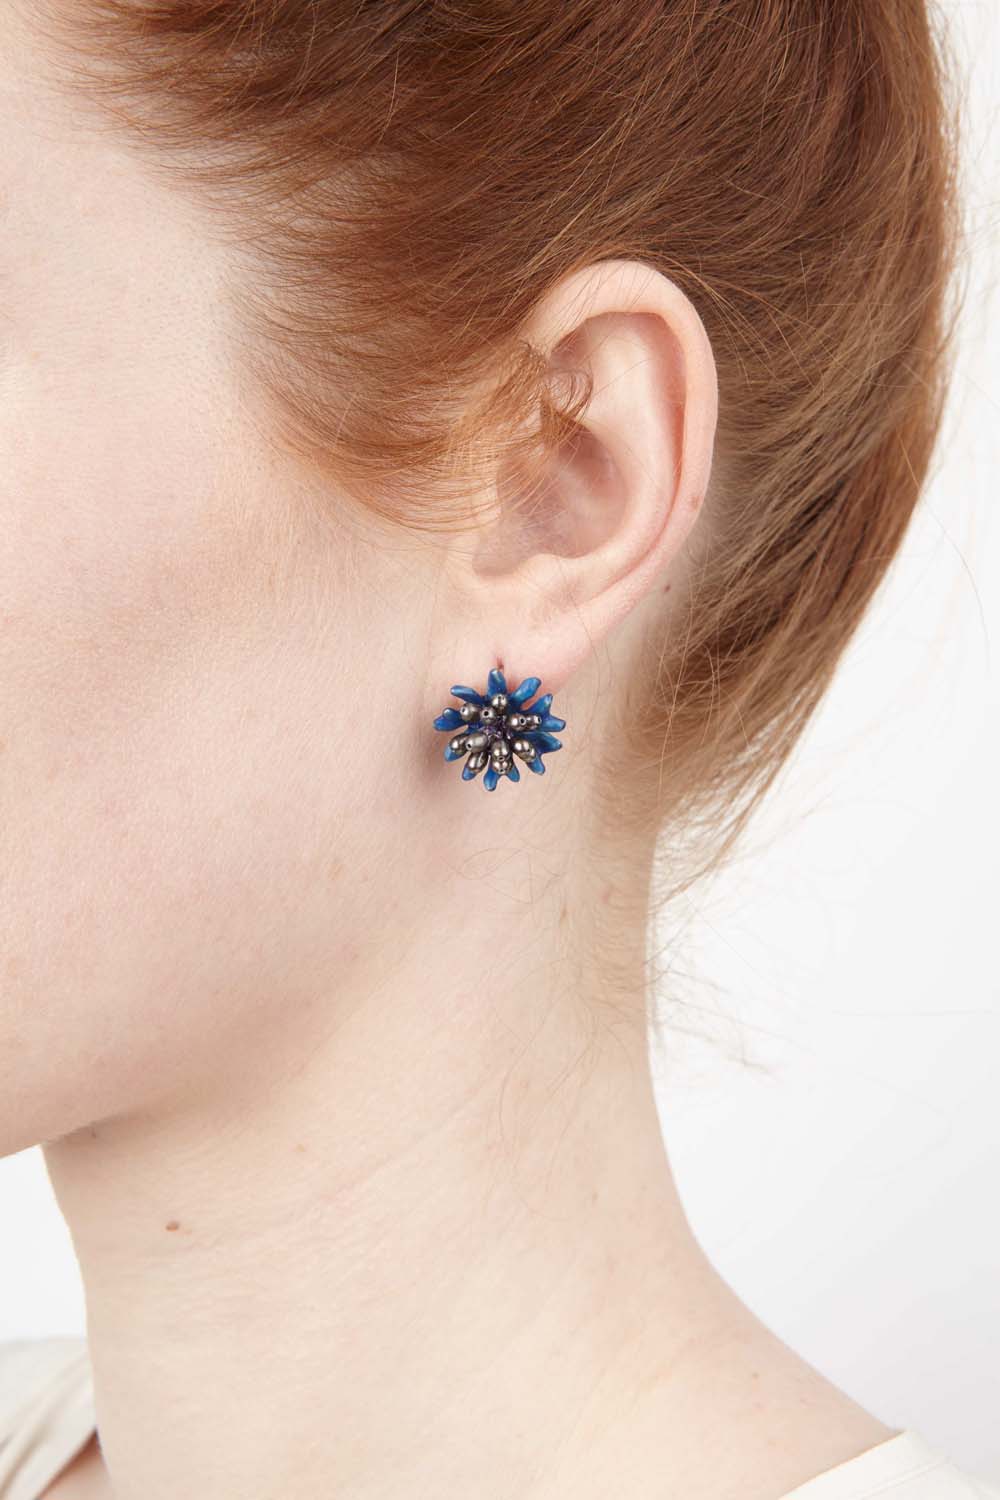 ヤグルマギクのピアス / Blue Cornflower Earrings